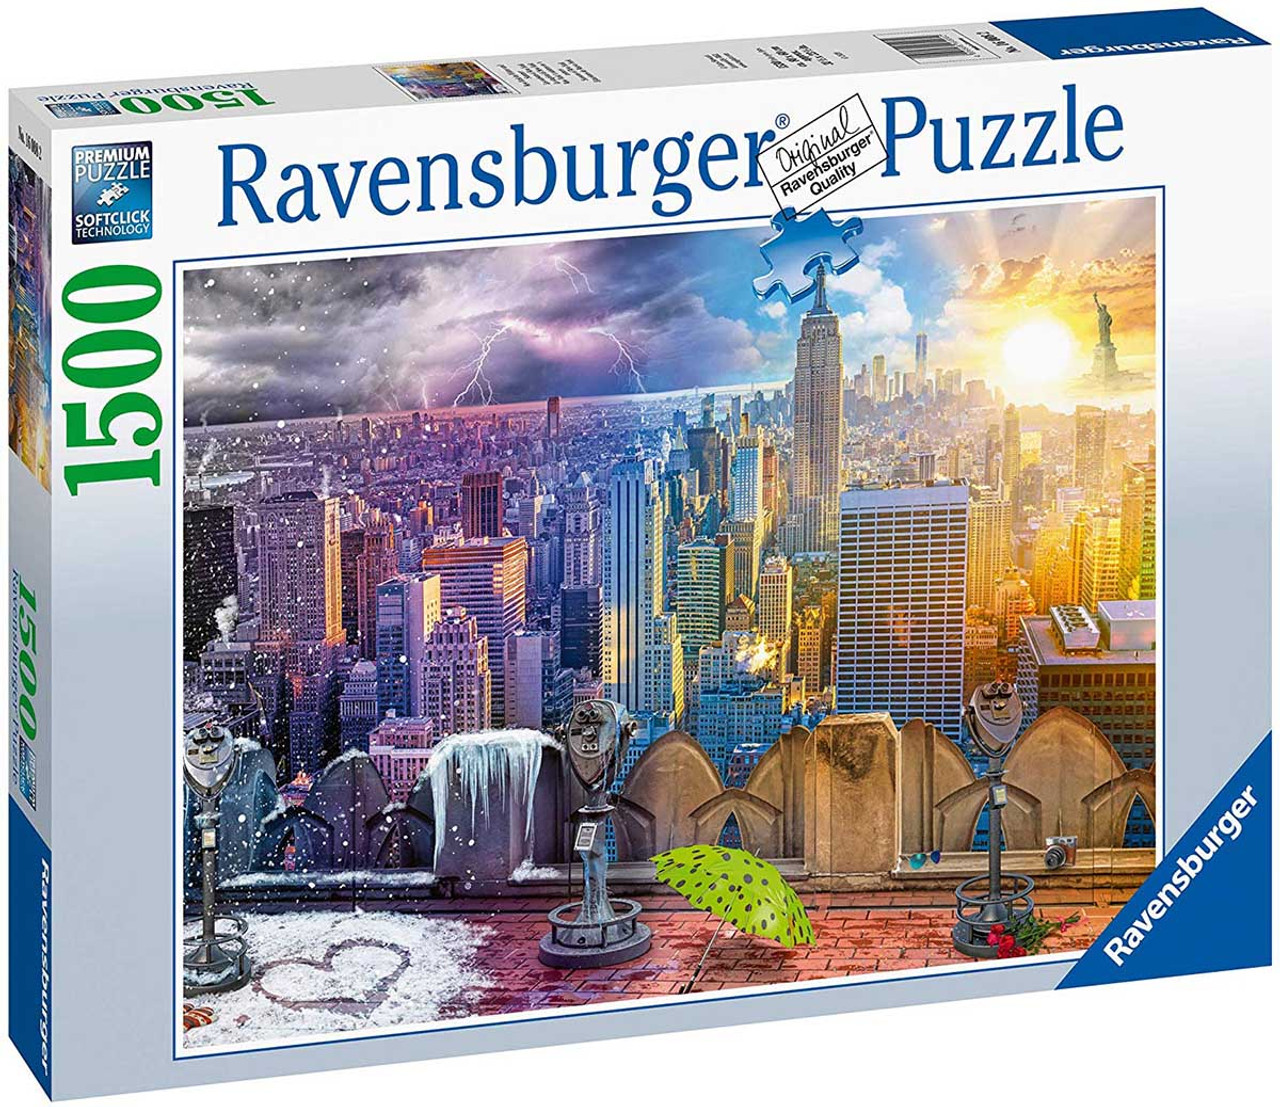 Puzzle board 300 à 1000 pièces - Ravensburger - Rue des Puzzles